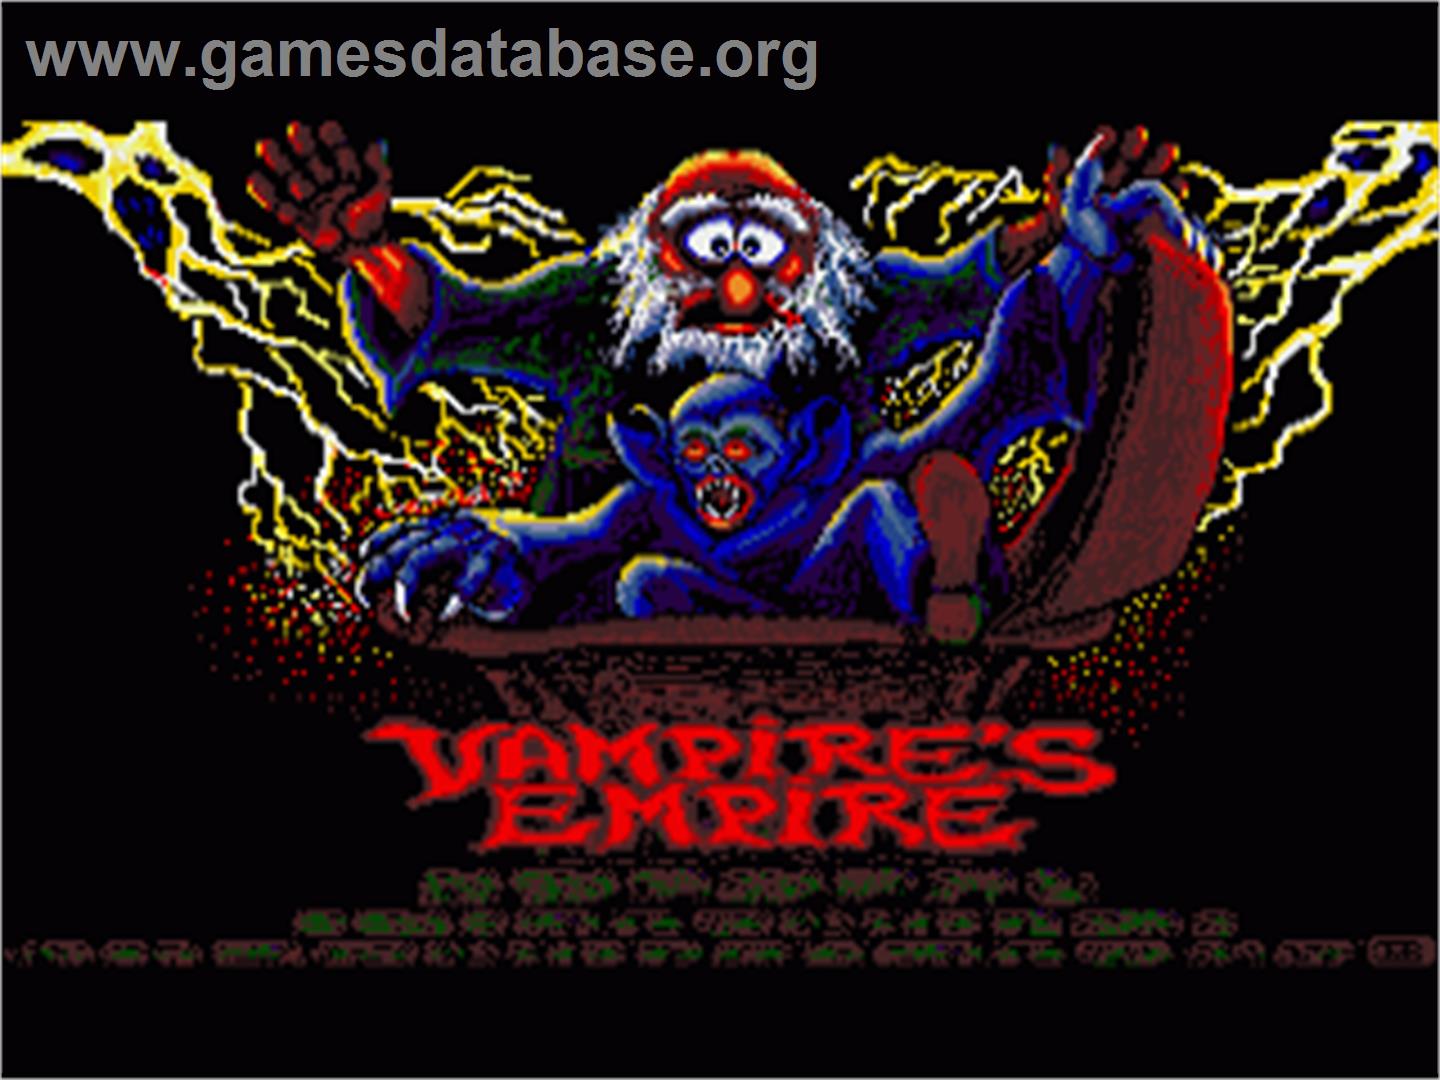 Vampire's Empire - Commodore Amiga - Artwork - In Game